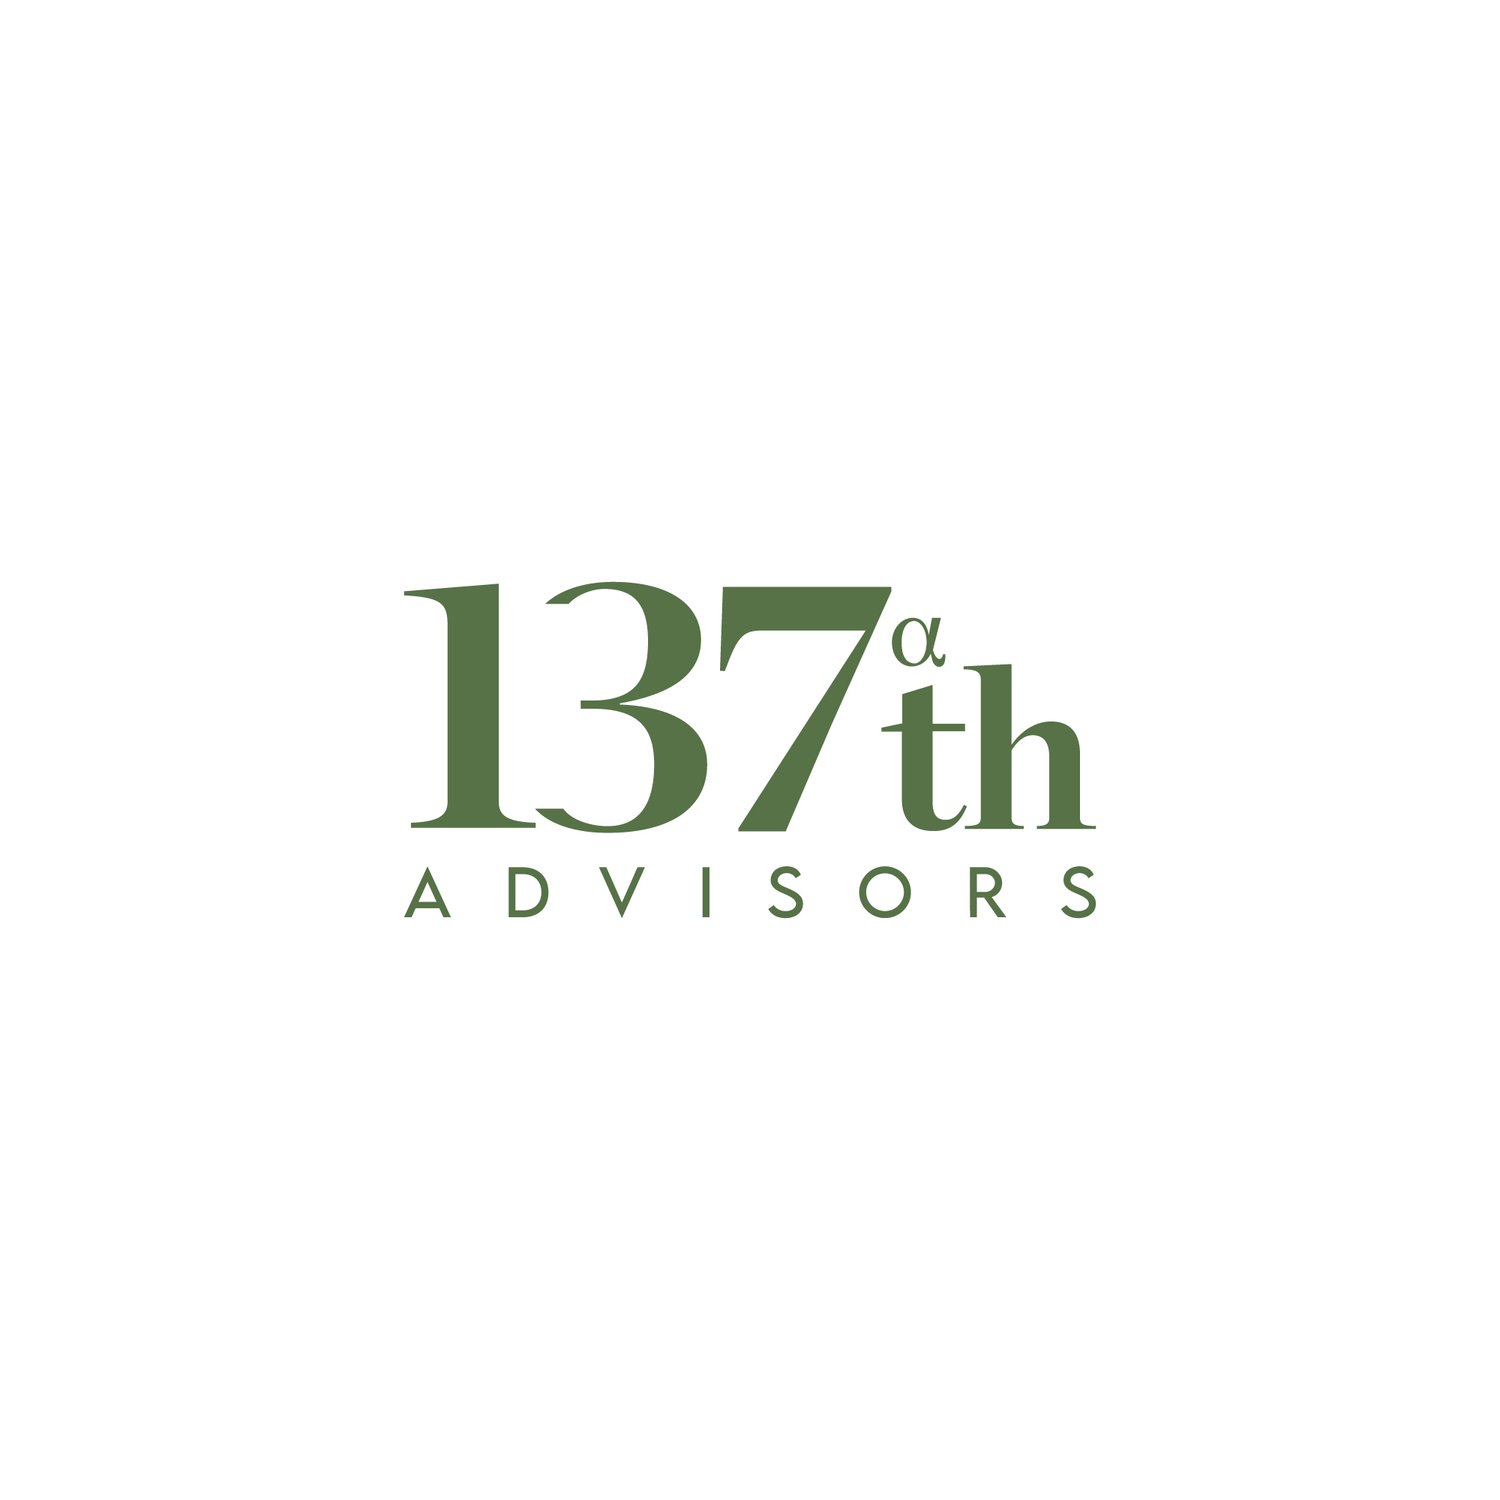 137th Advisors